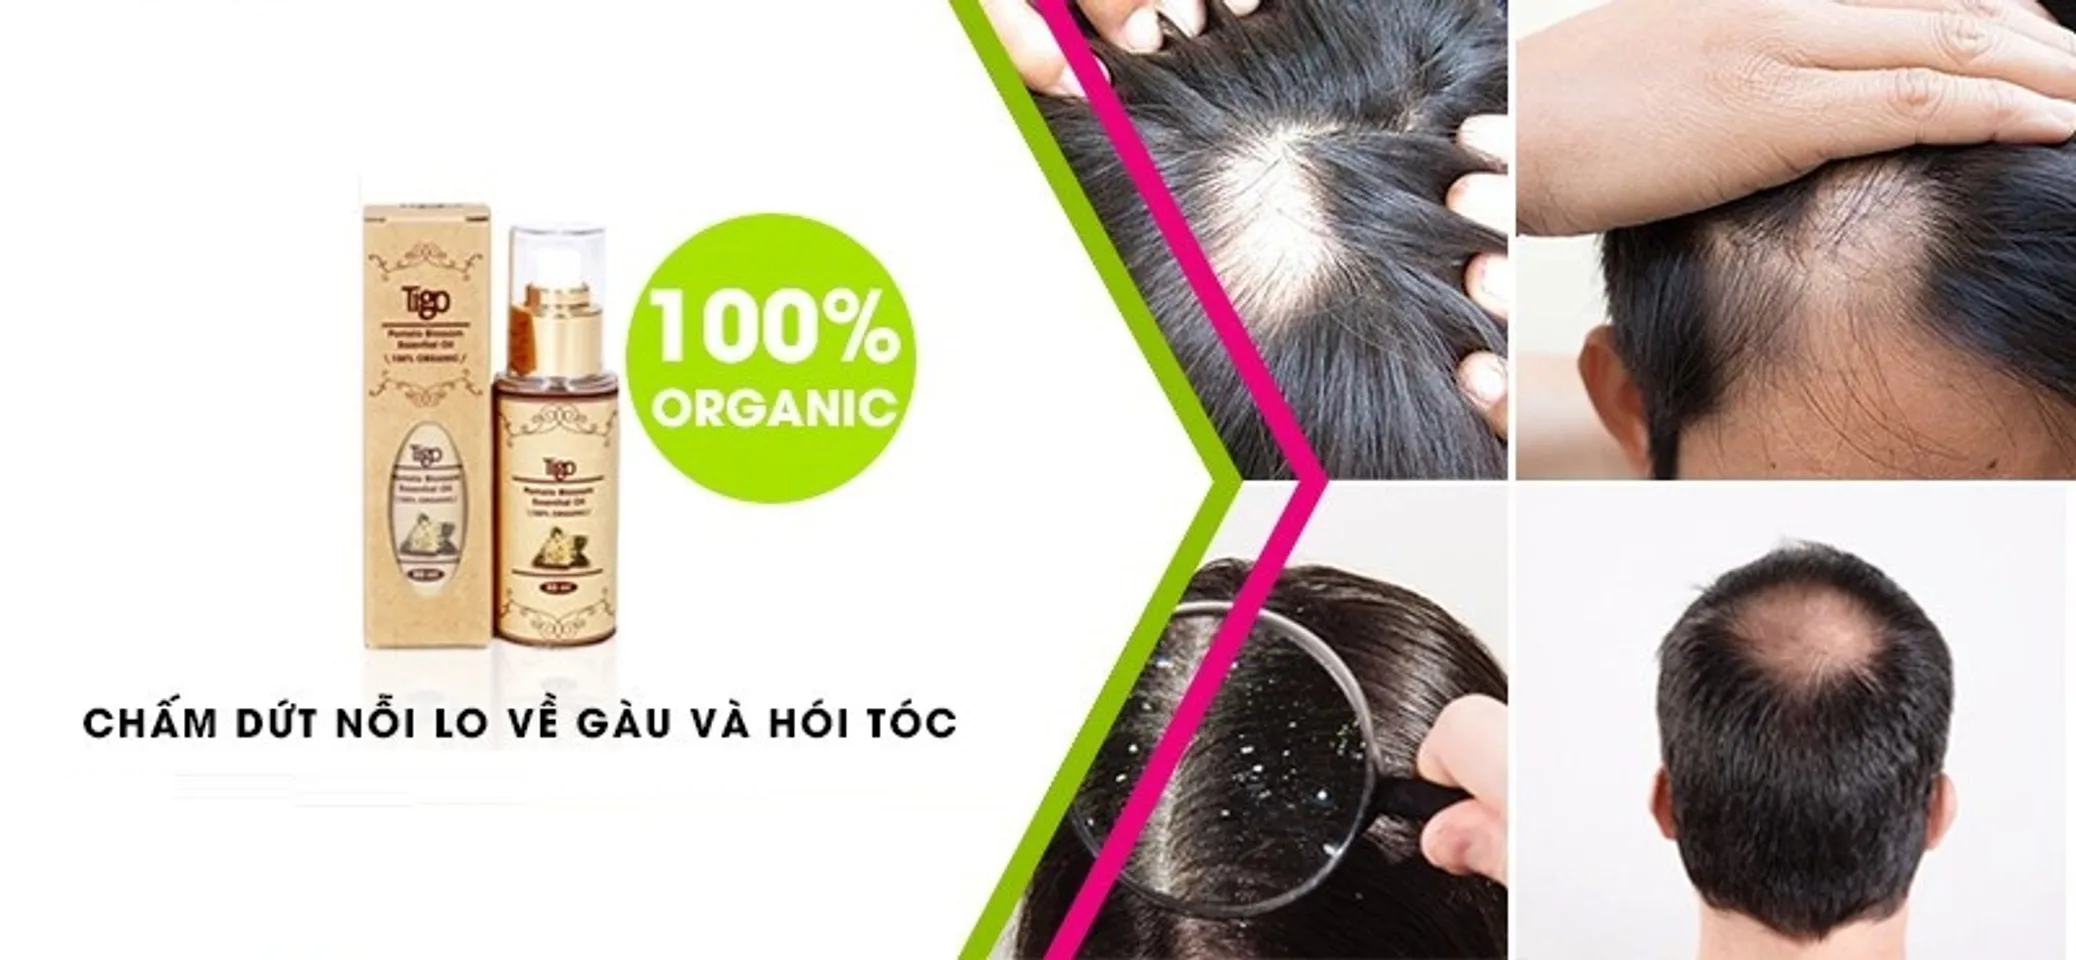 Tinh dầu hoa bưởi có tác dụng kích thích tóc mọc, giảm rụng tóc với hiệu quả tối ưu